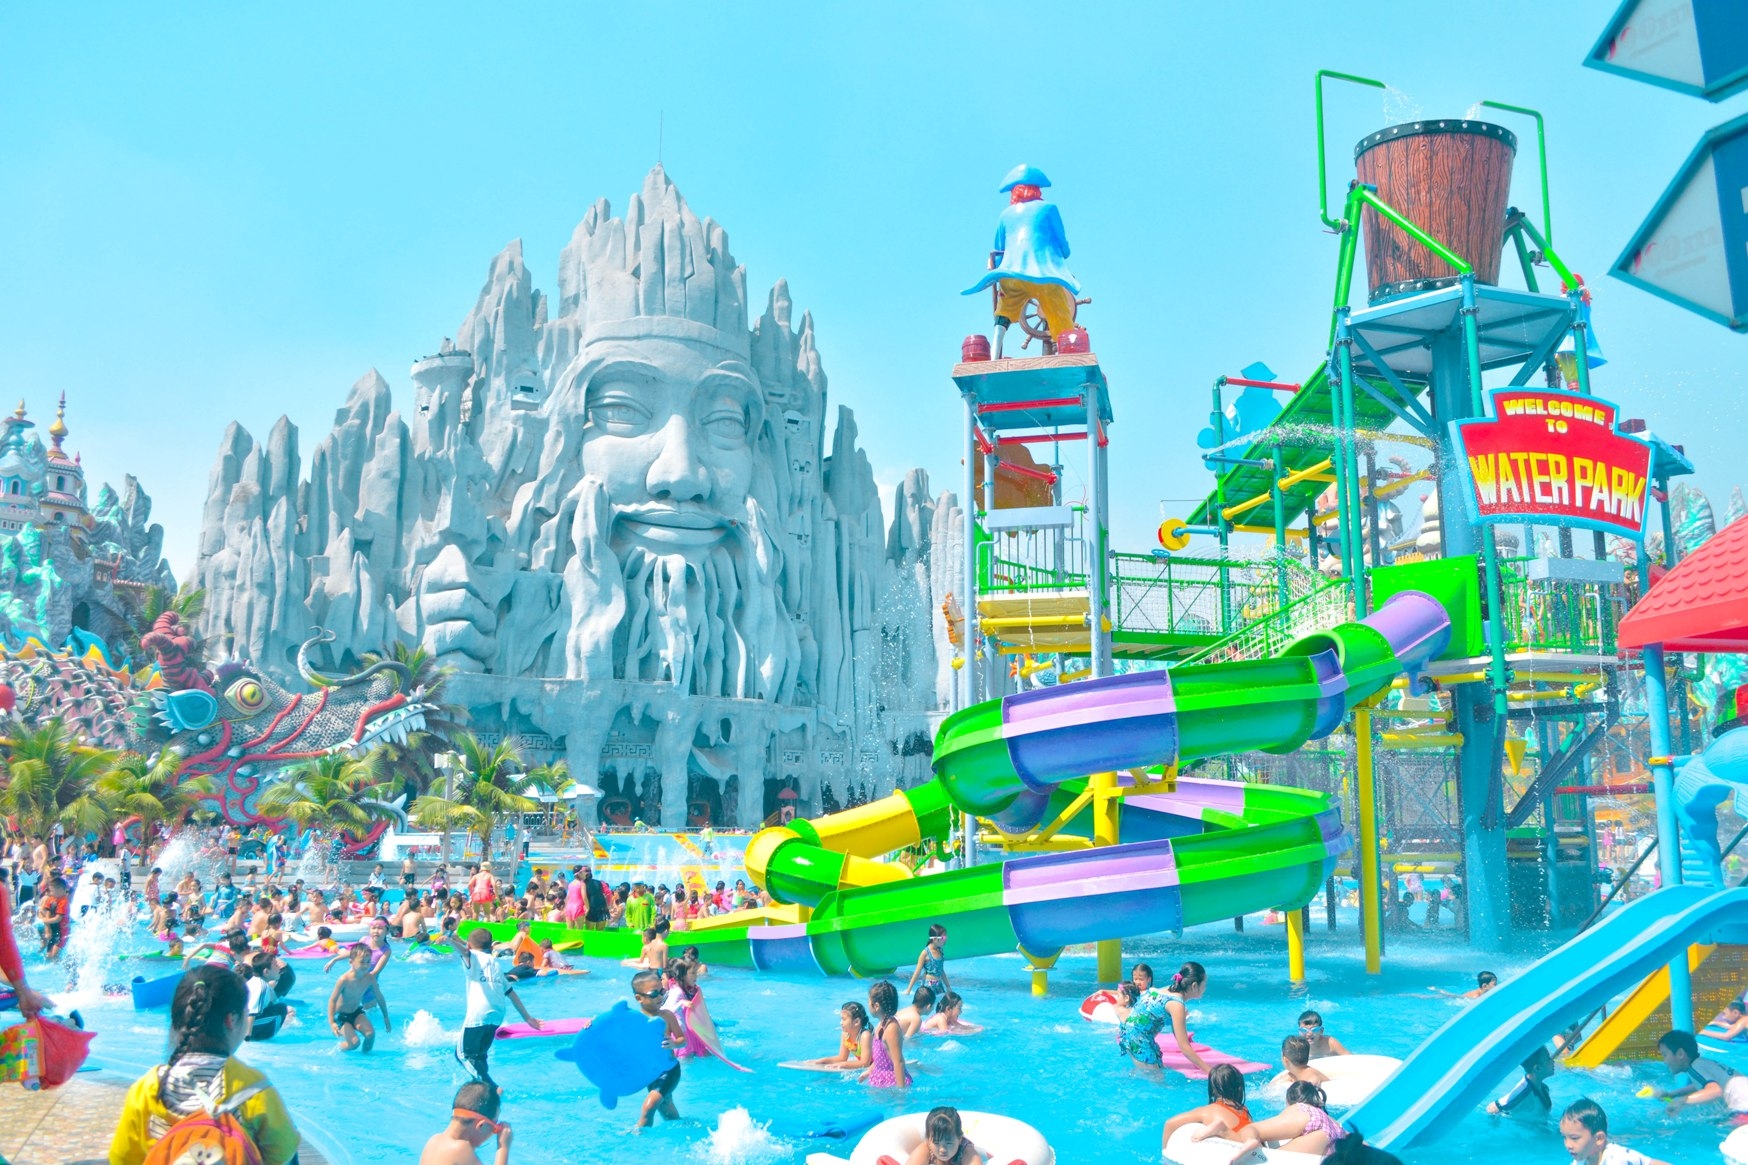 Day Tour To Suoi Tien Theme Park